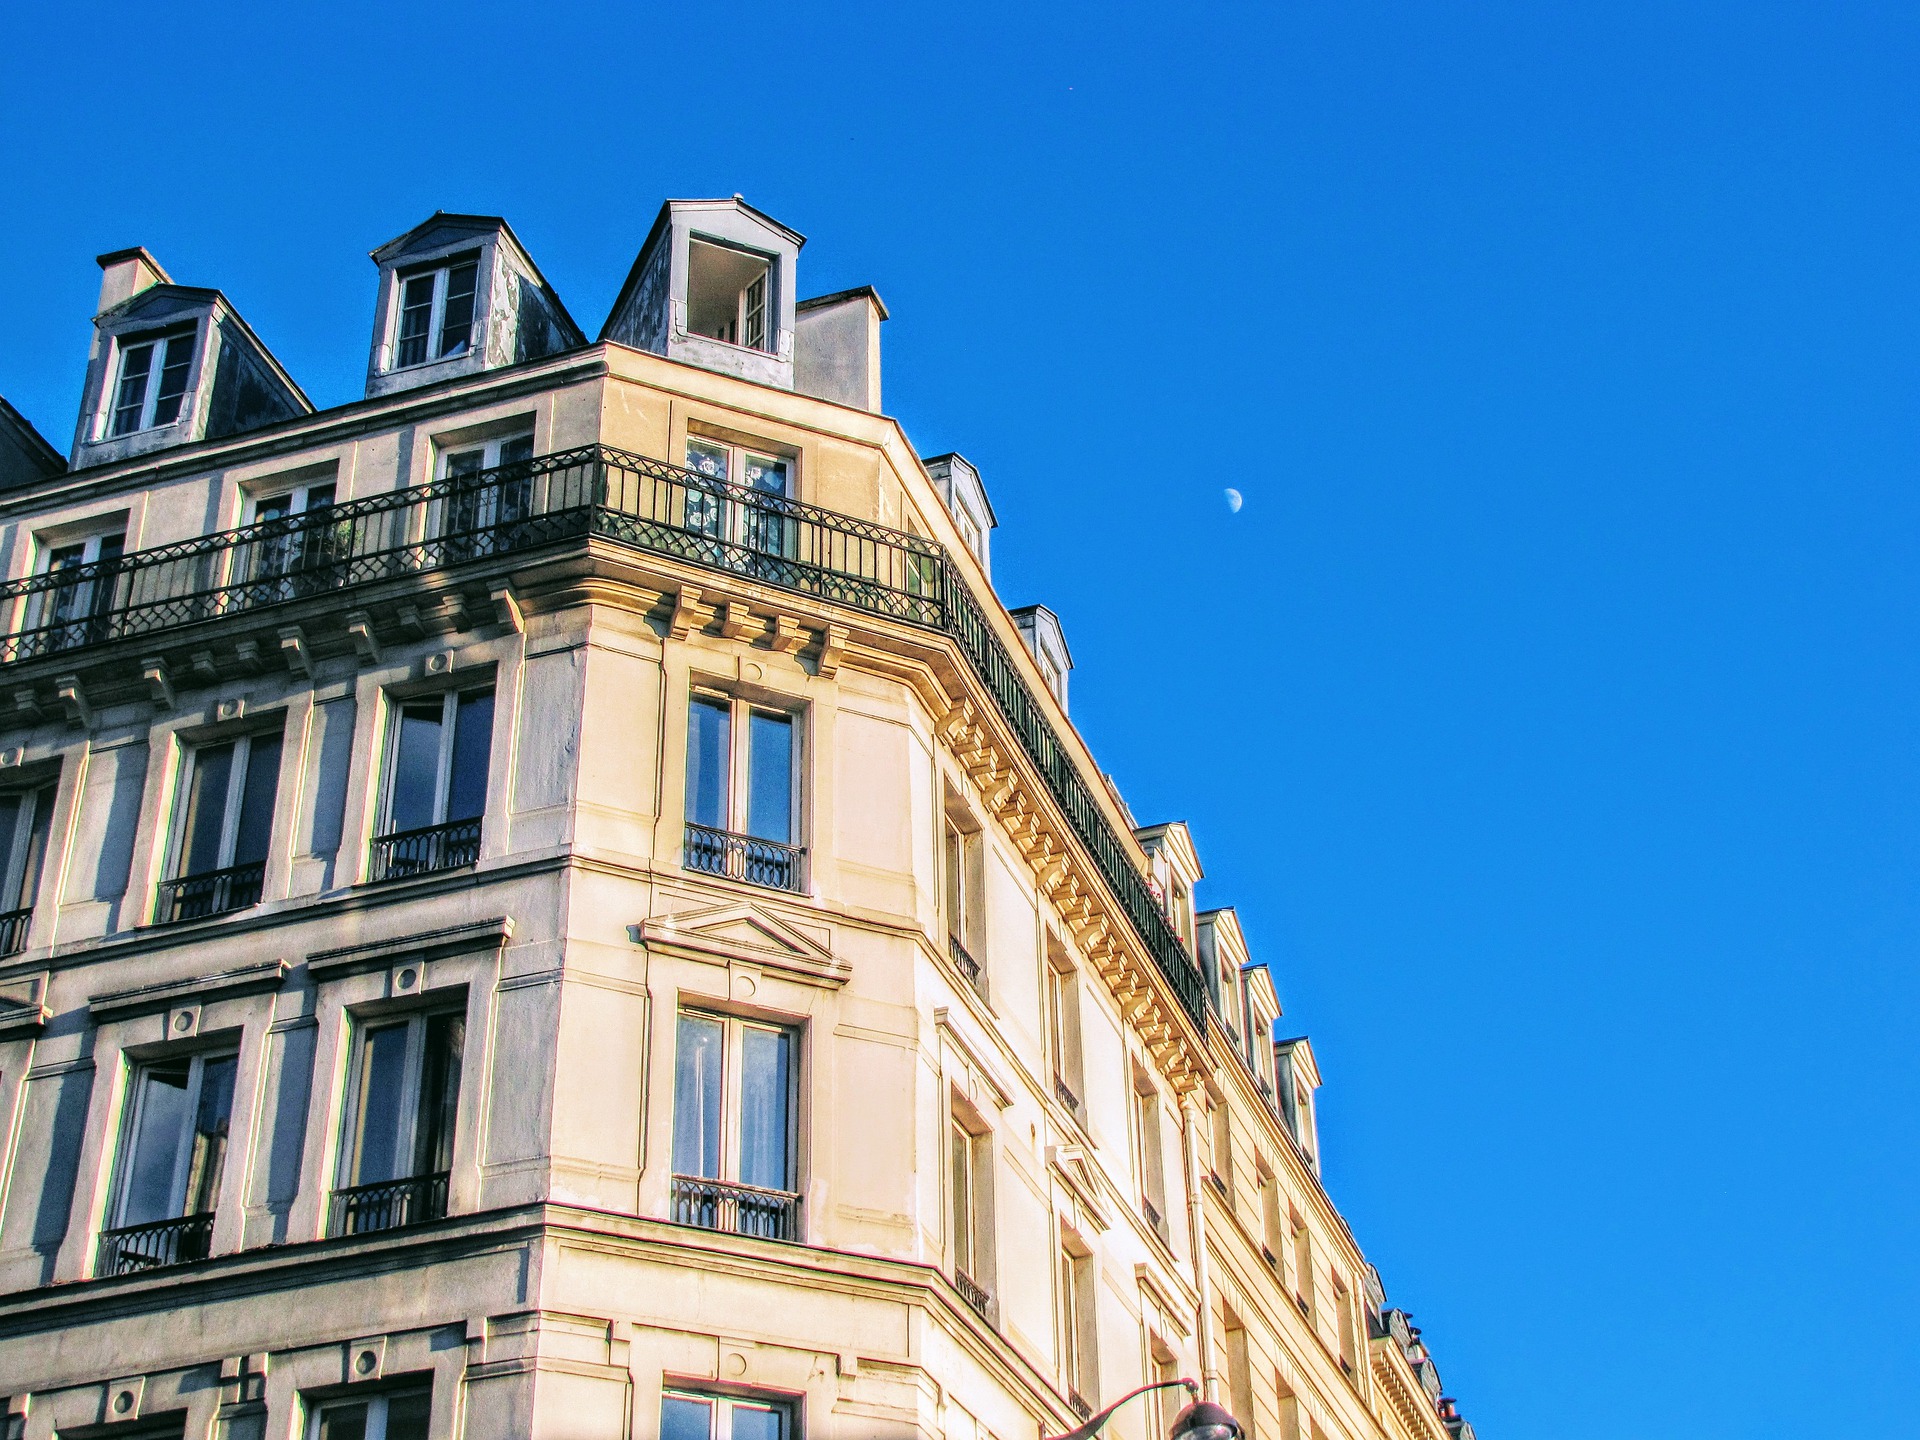 The numbering of buildings in Paris